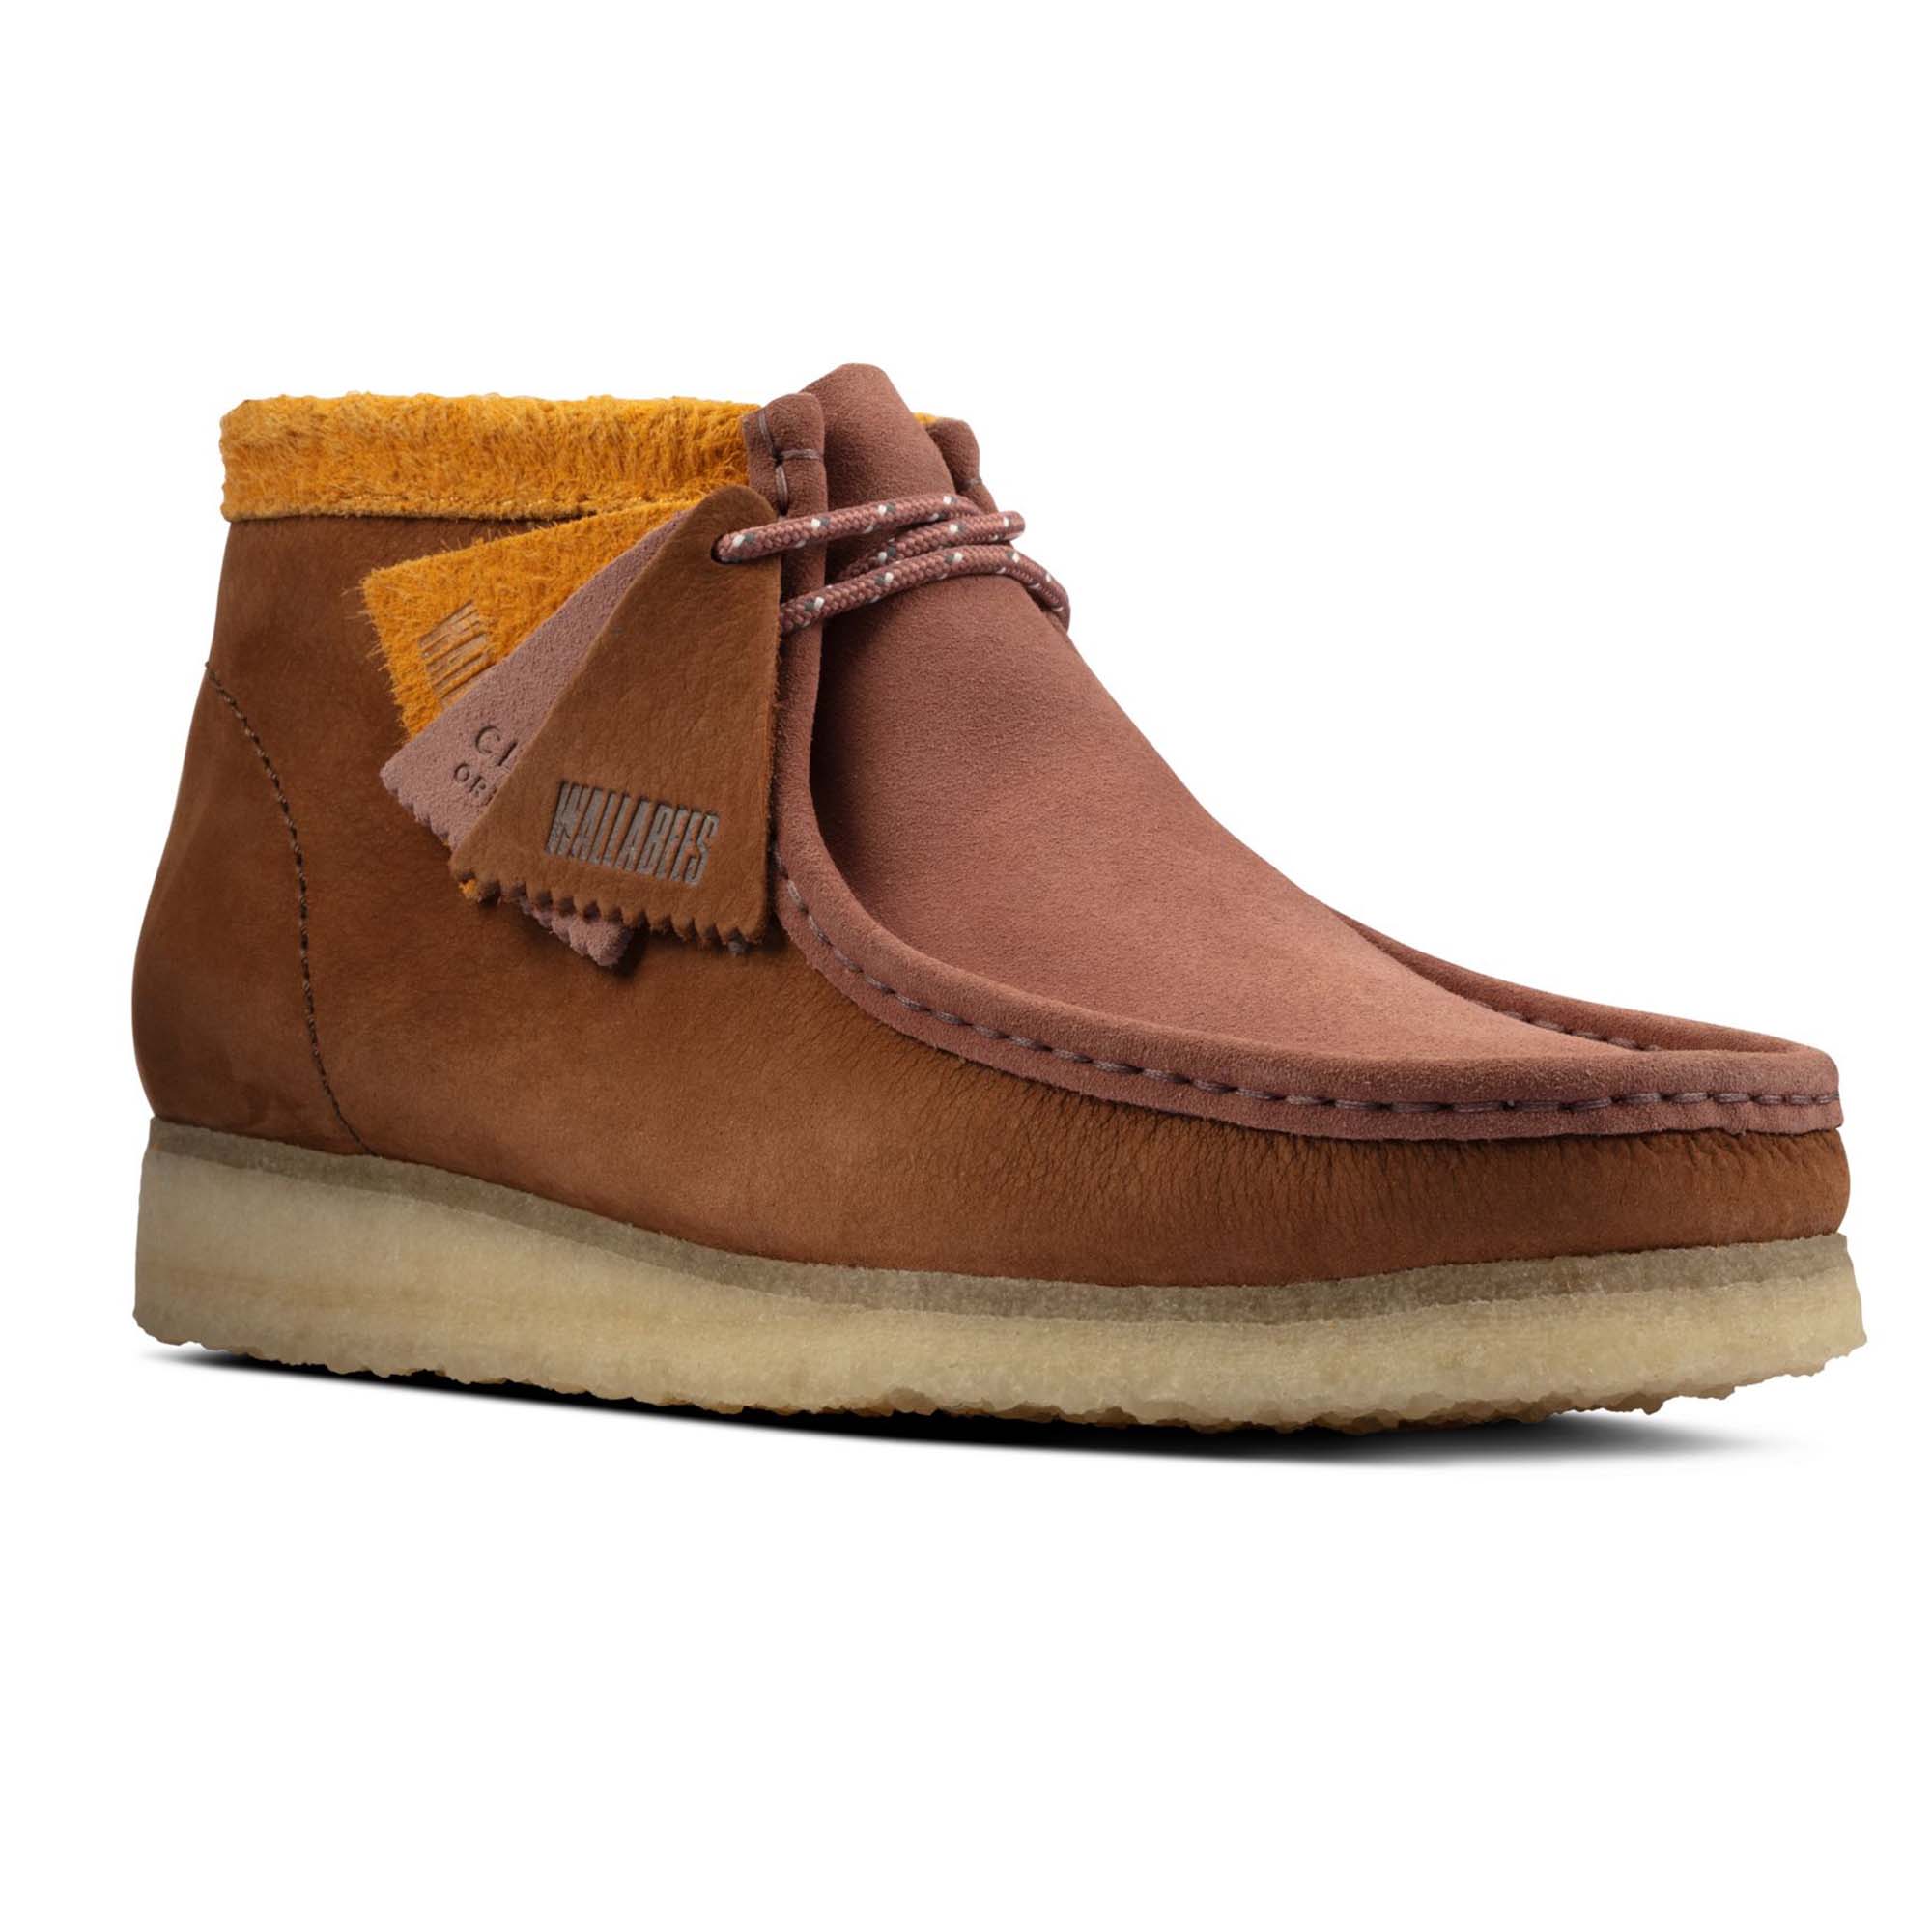 Clarks Originals Wallabee Boot - Terracotta/Rust